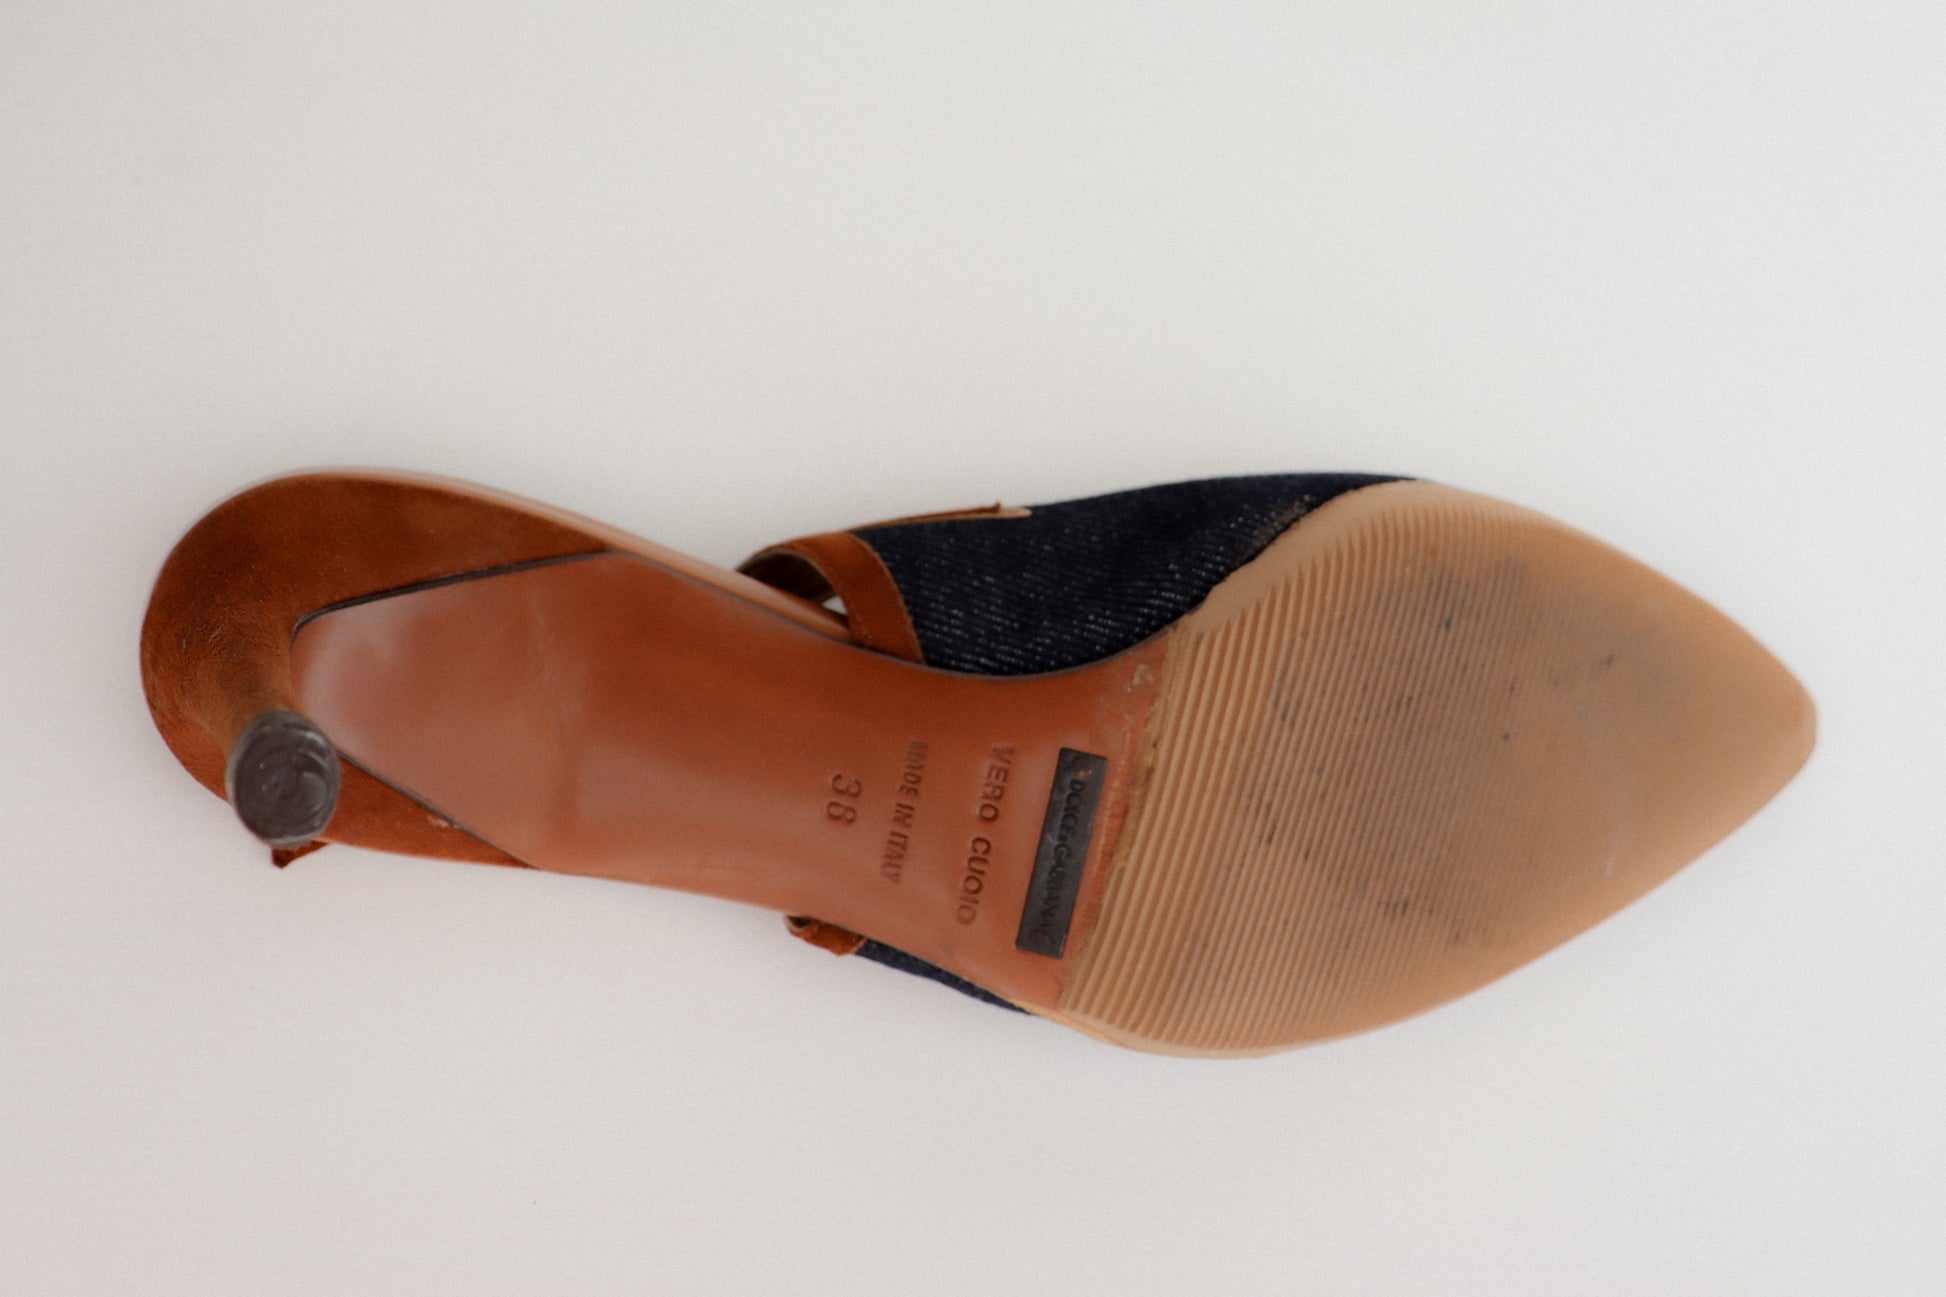 Louis Vuitton Authentic Vintage Kitten Heels Sandals Slides Women size 38